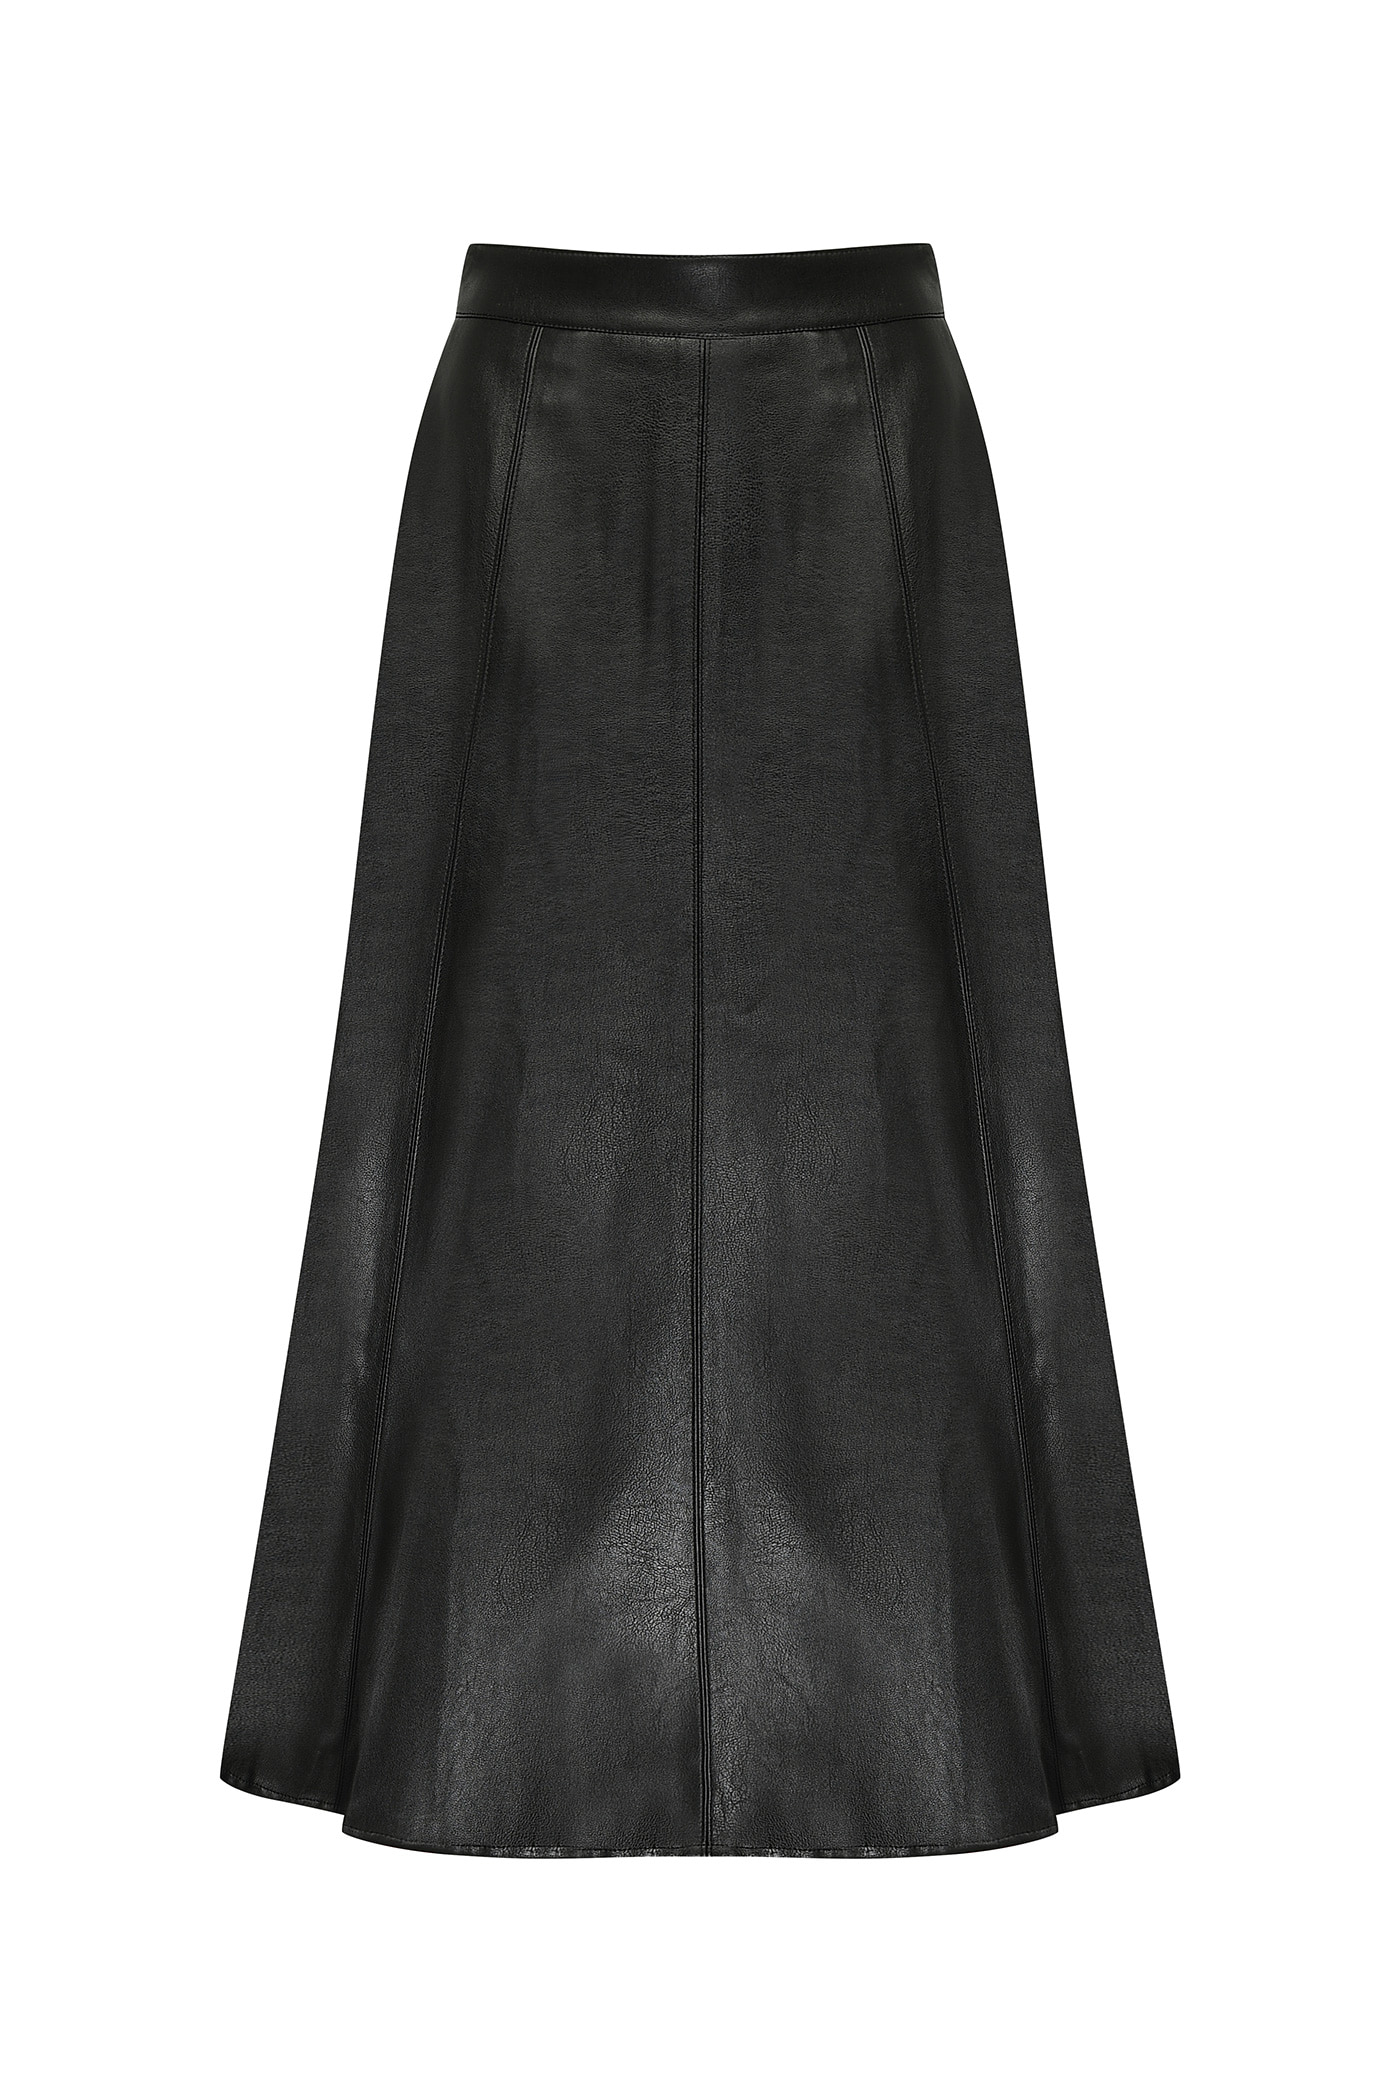 [SAMPLE]Fake Leather Skirt[LMBBAUSK201]-Black